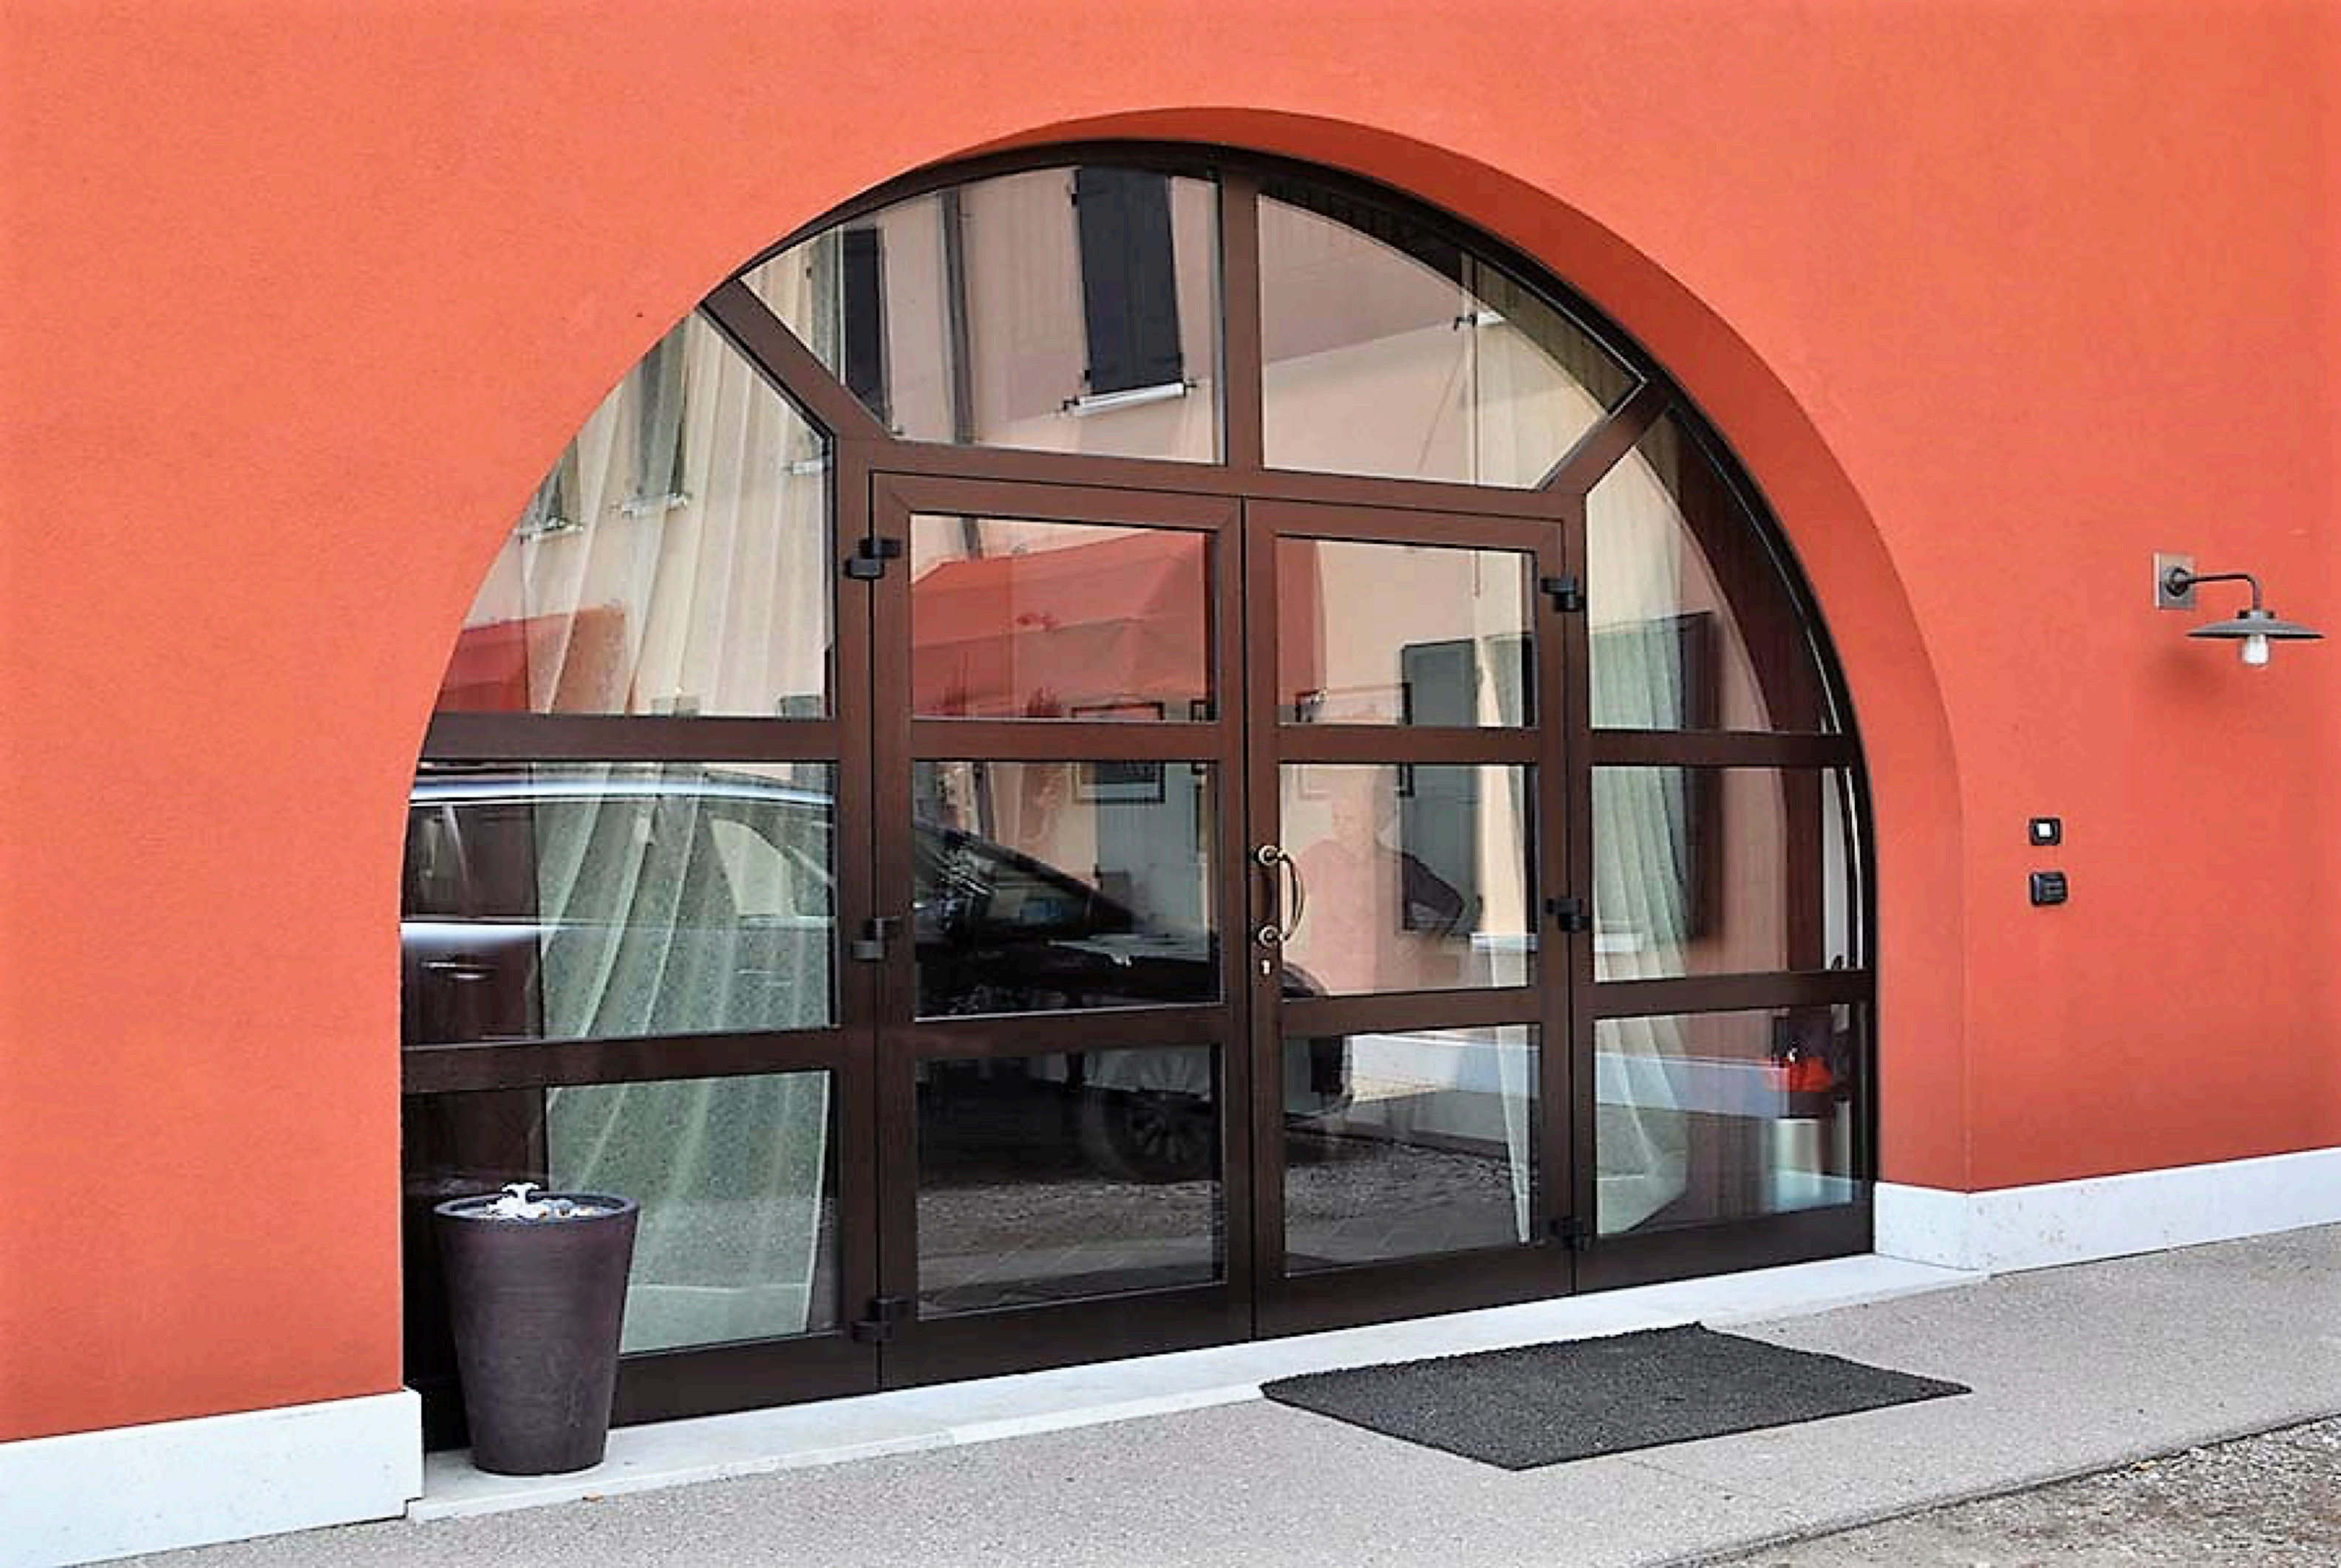 Restaurant La Fenice - Entrance Door - Vicenza (Italy)